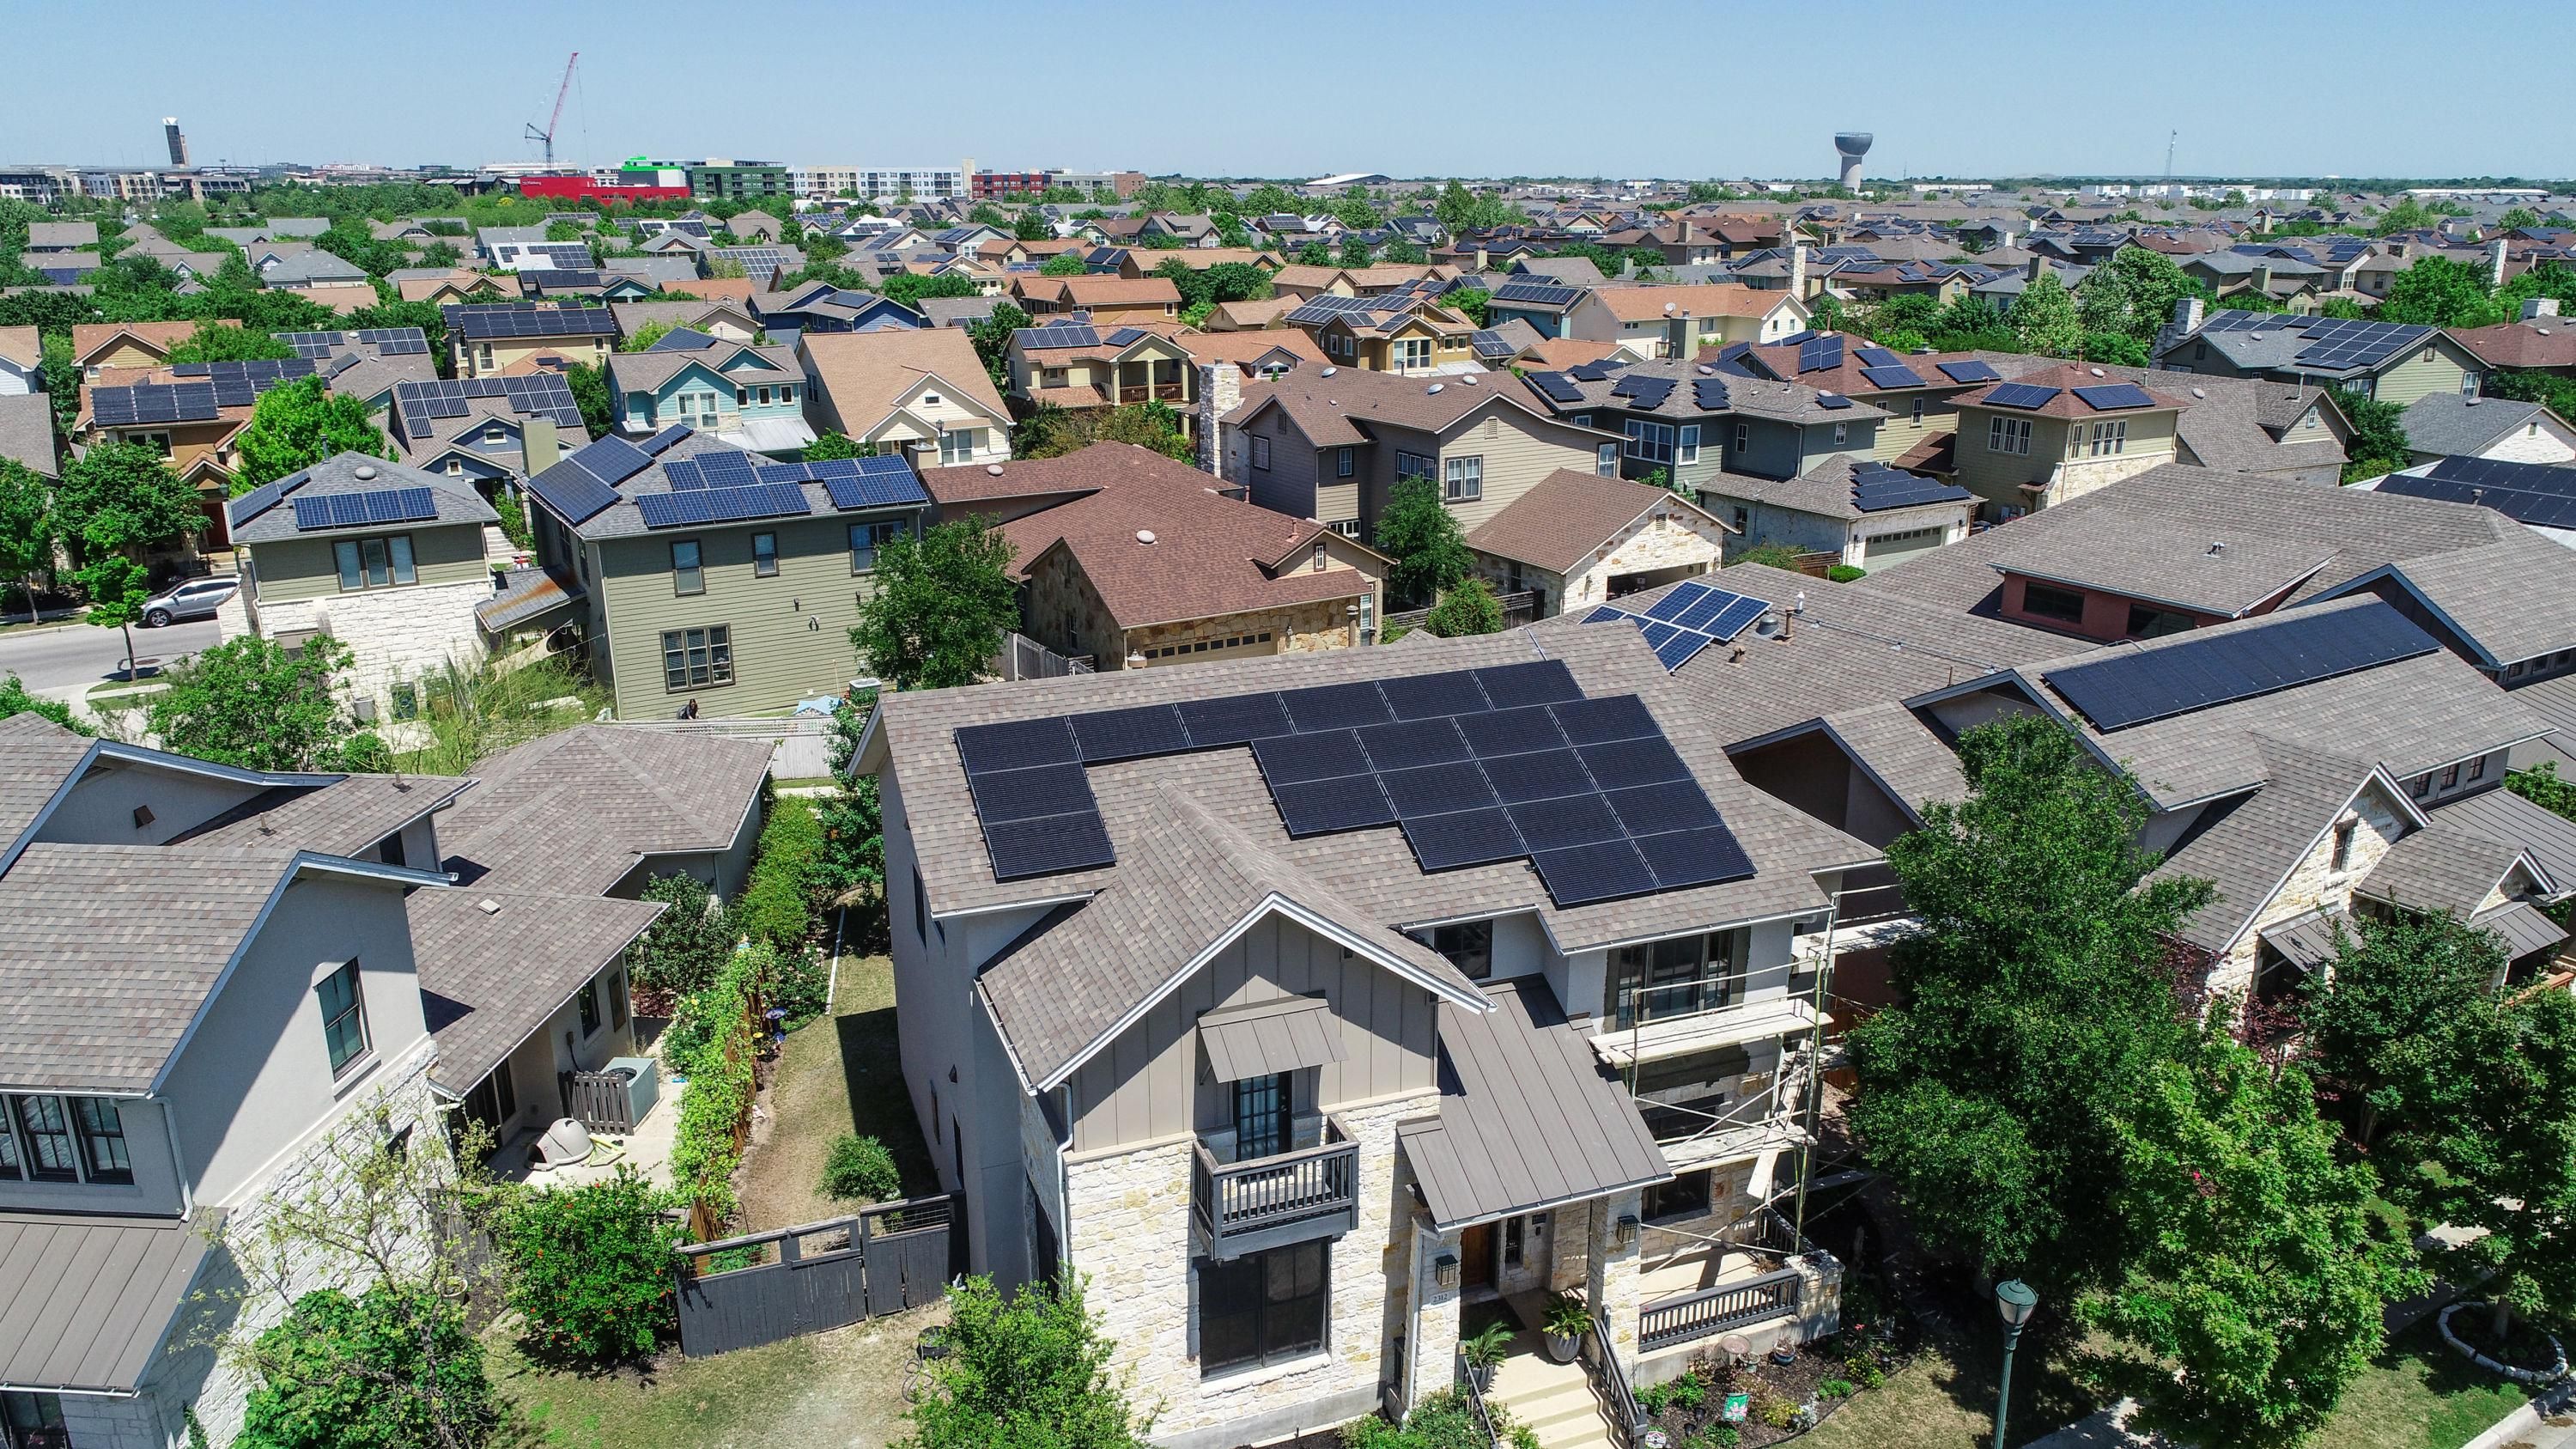 rooftop solar in tx